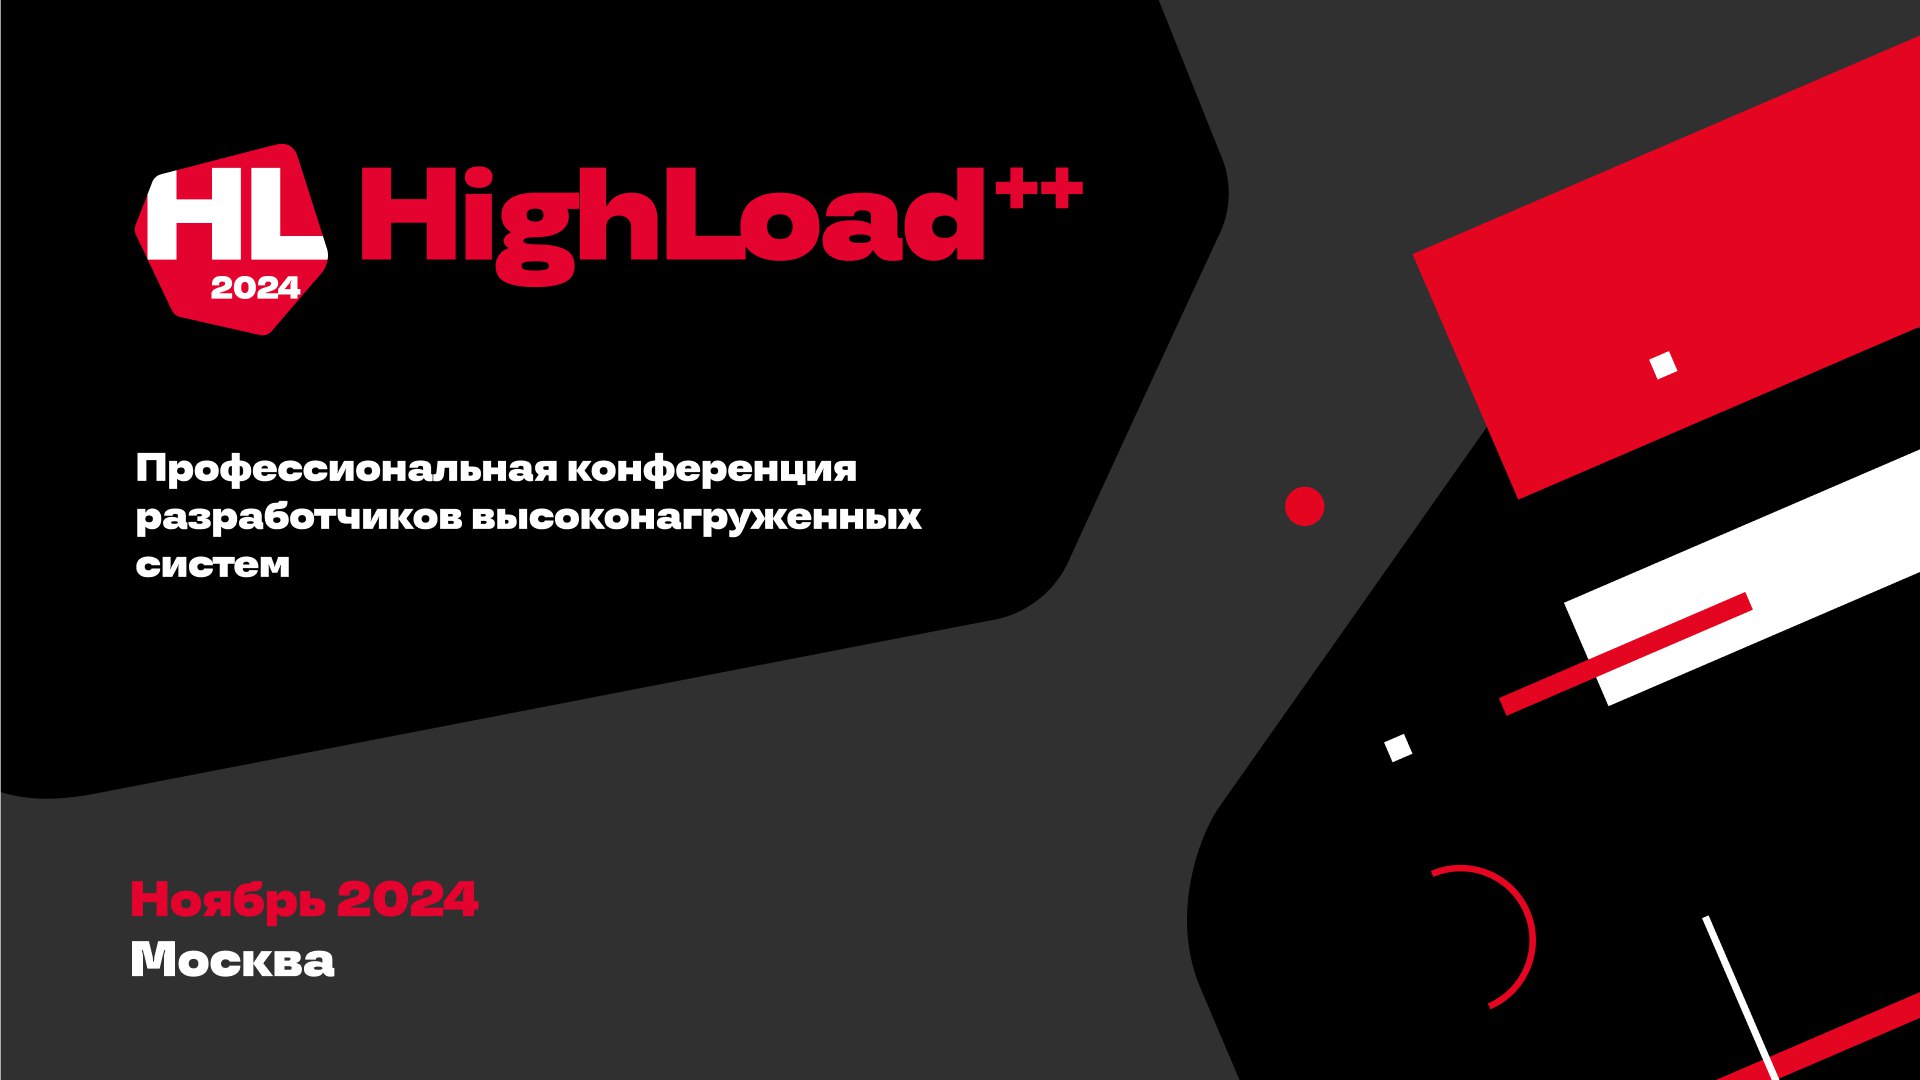 Обложка мероприятия HighLoad++ 2024